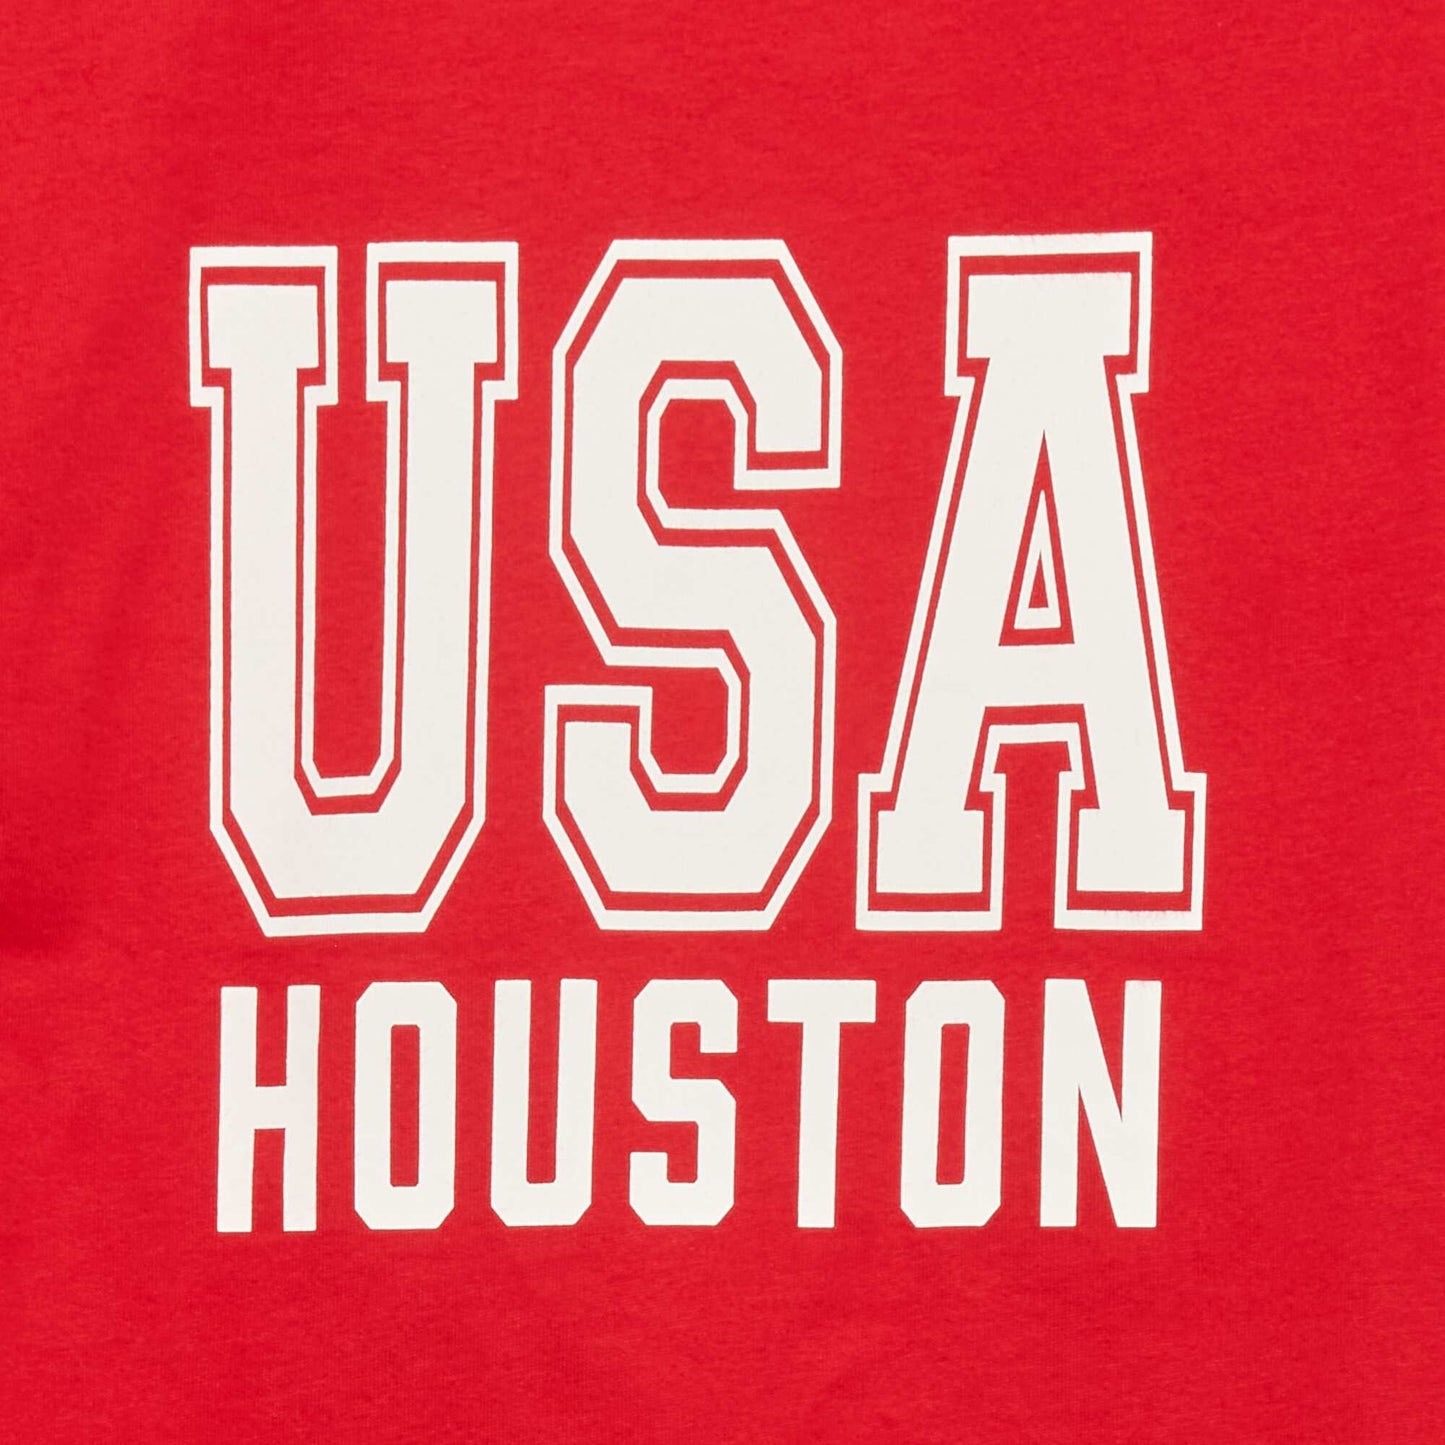 USA Houston print T-shirt RED_PMA3